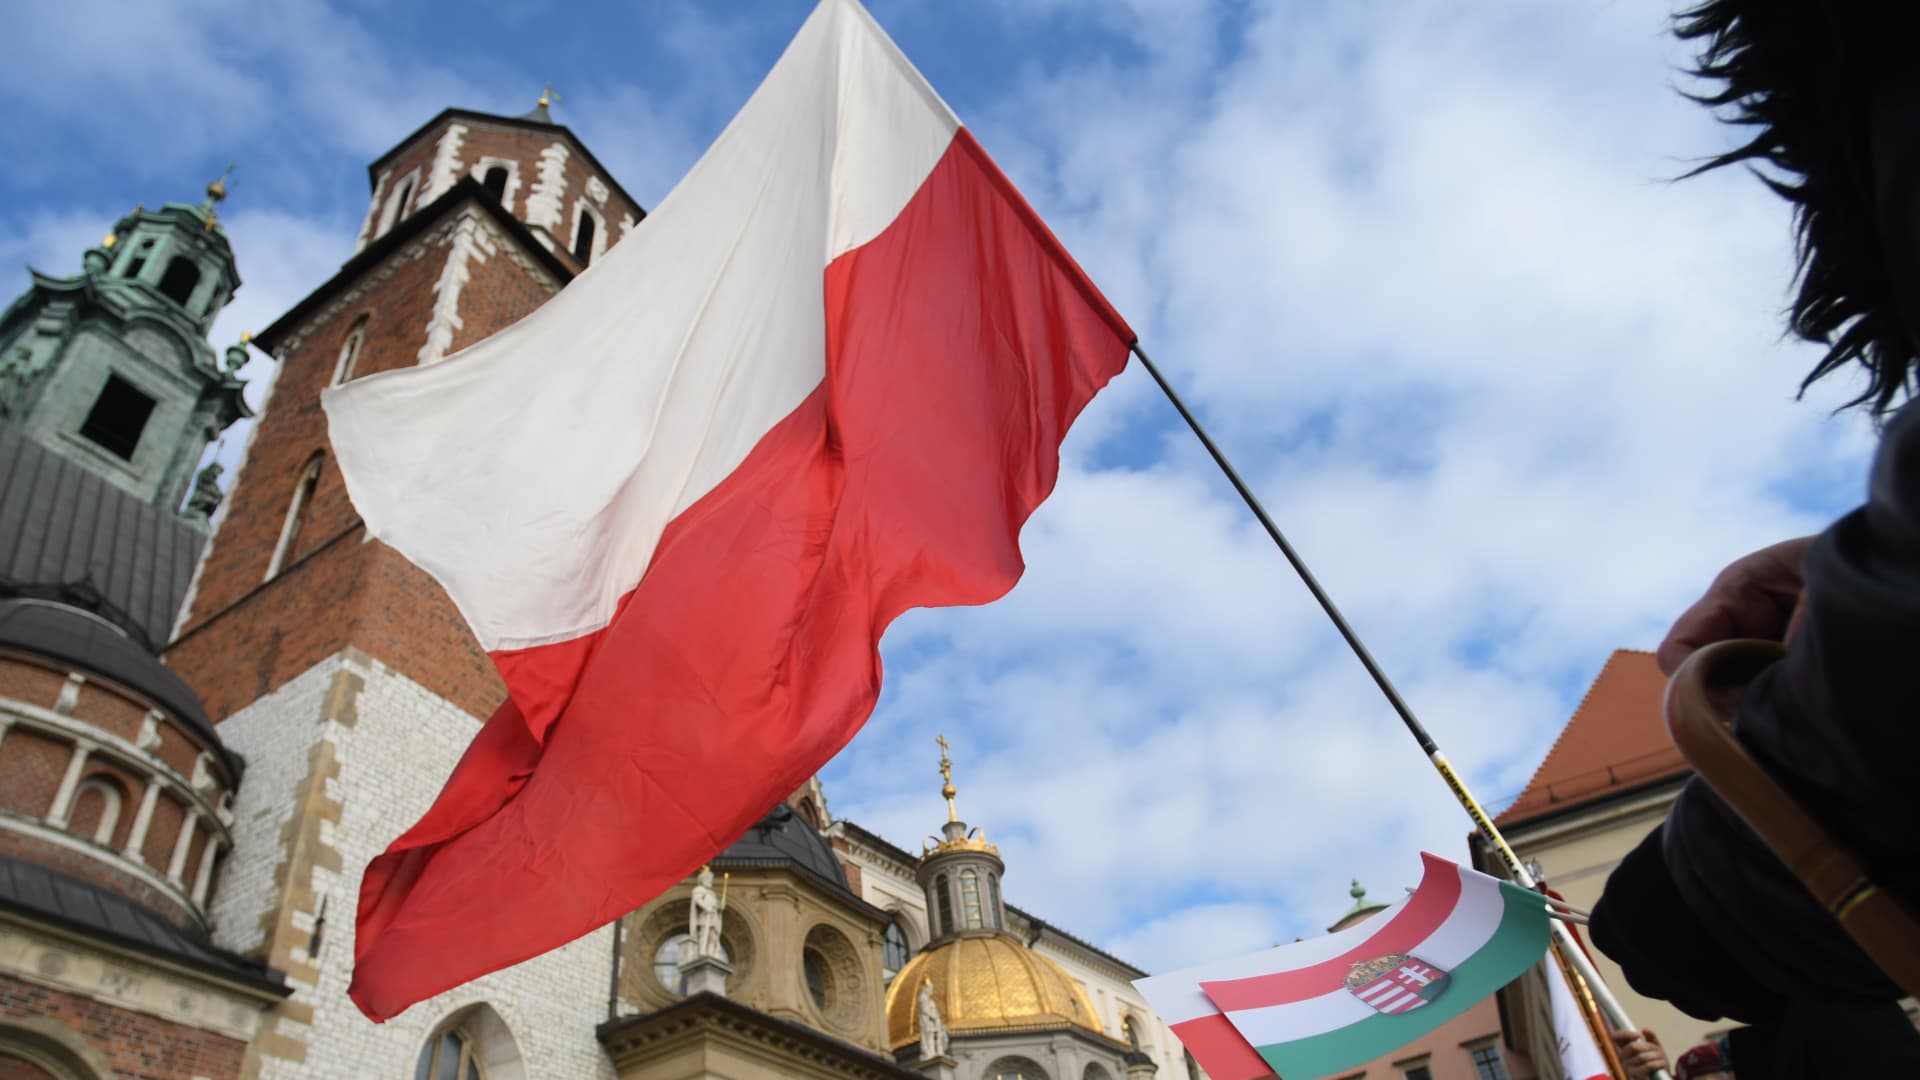 Polish national flag.